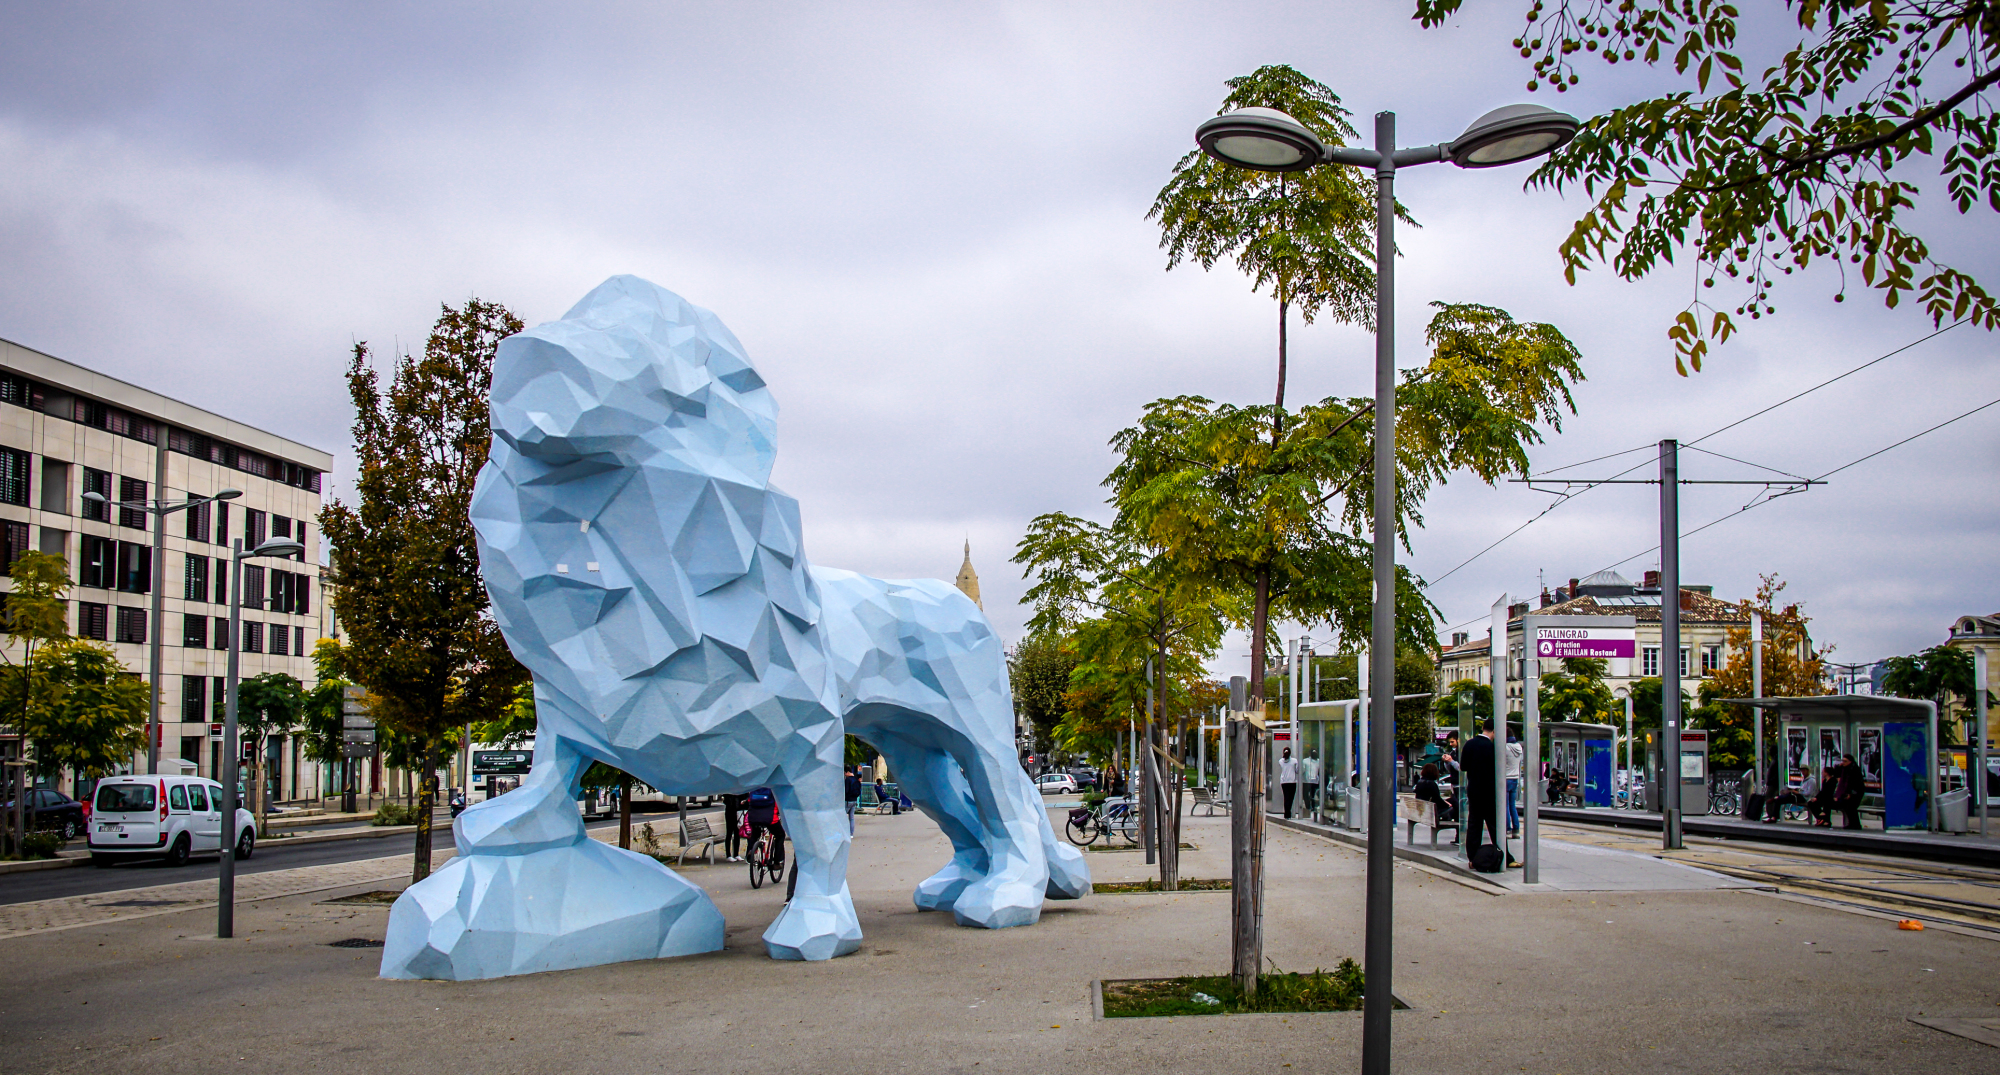 Le Lion Bleu de Xavier Veilhan dans le quartier de la Bastide à Bordeaux